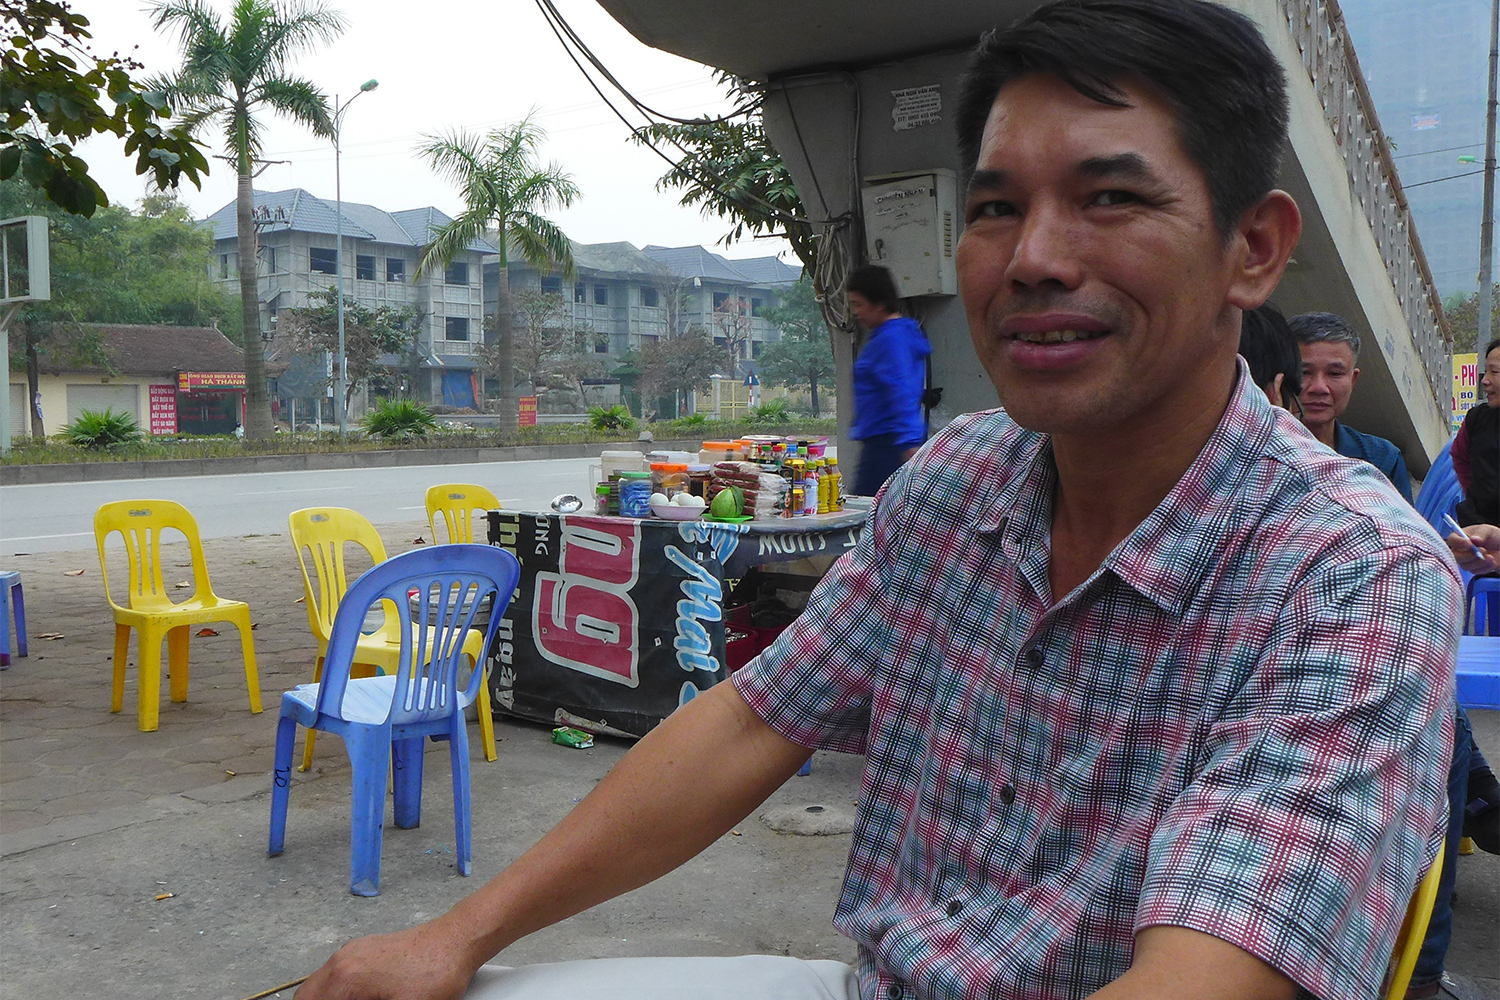 Hong Kha Truong, moniteur d’auto-école, fait une pause dans un café, assis sur un petit tabouret typique du Vietnam.